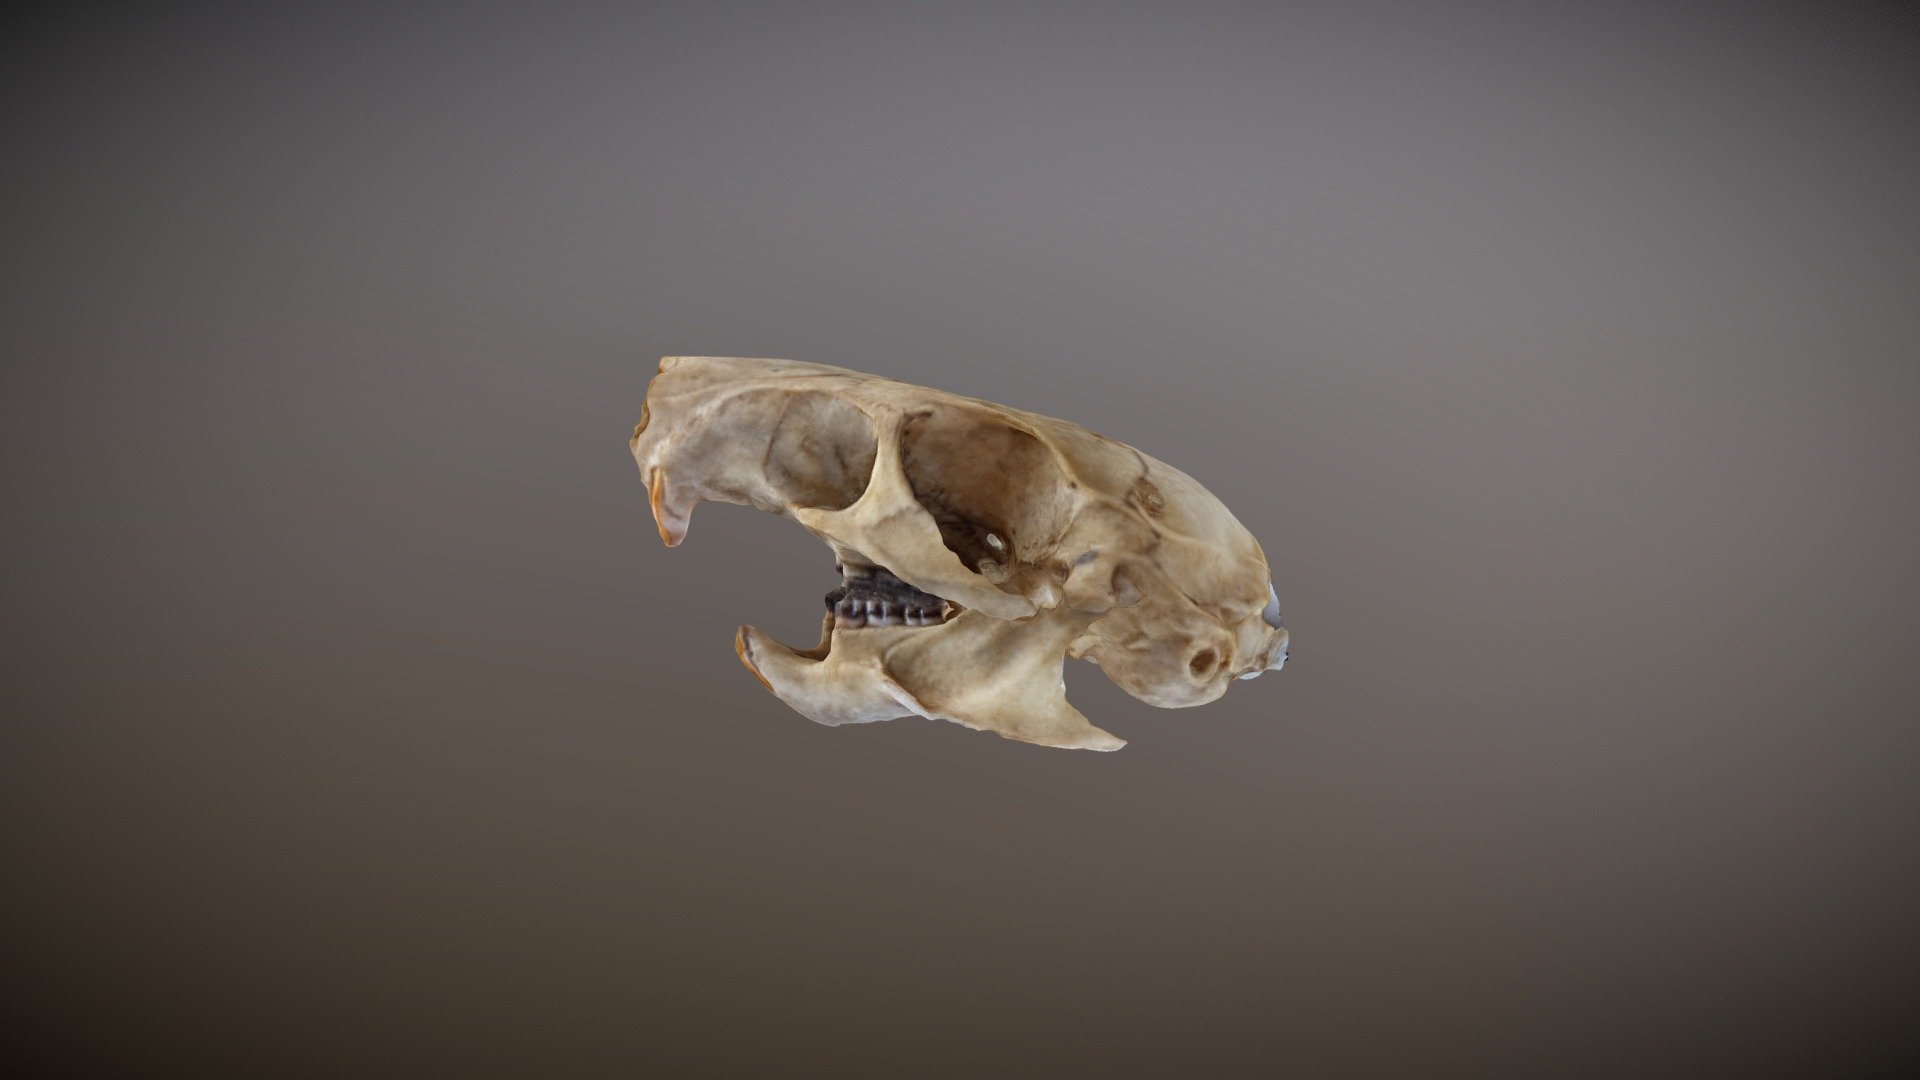 Brown rat skull found outside.
scanned using photogrammetry technique - Rat Skull - 3D model by SJ 3Designs (@jumuno03) 3d model